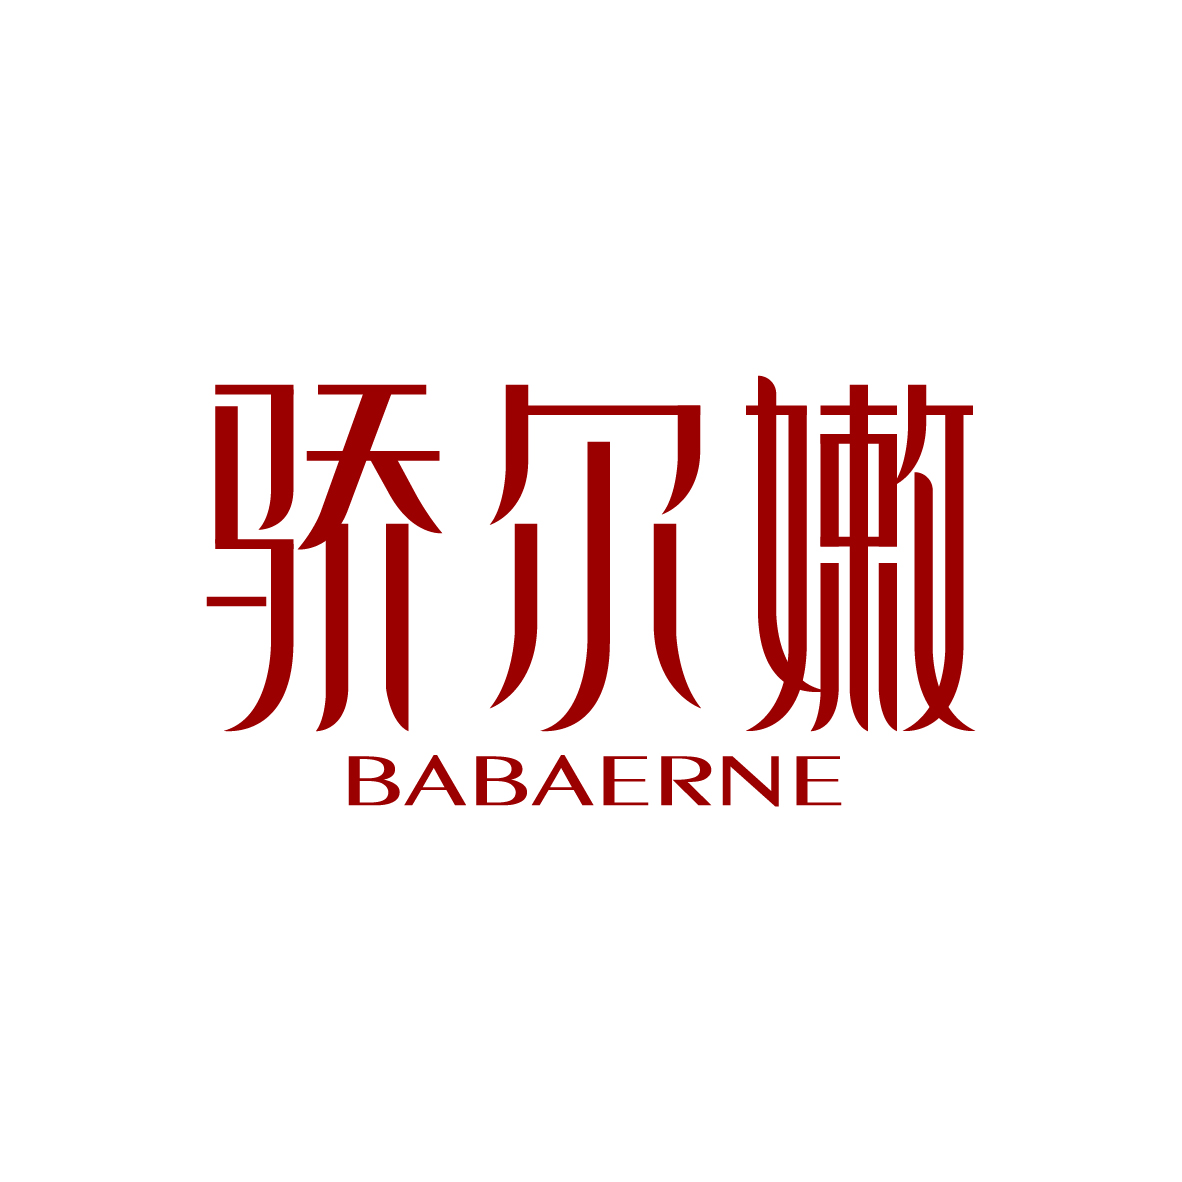 广州市君陌电子商务商行商标骄尔嫩 BABAERNE（03类）商标买卖平台报价，上哪个平台最省钱？